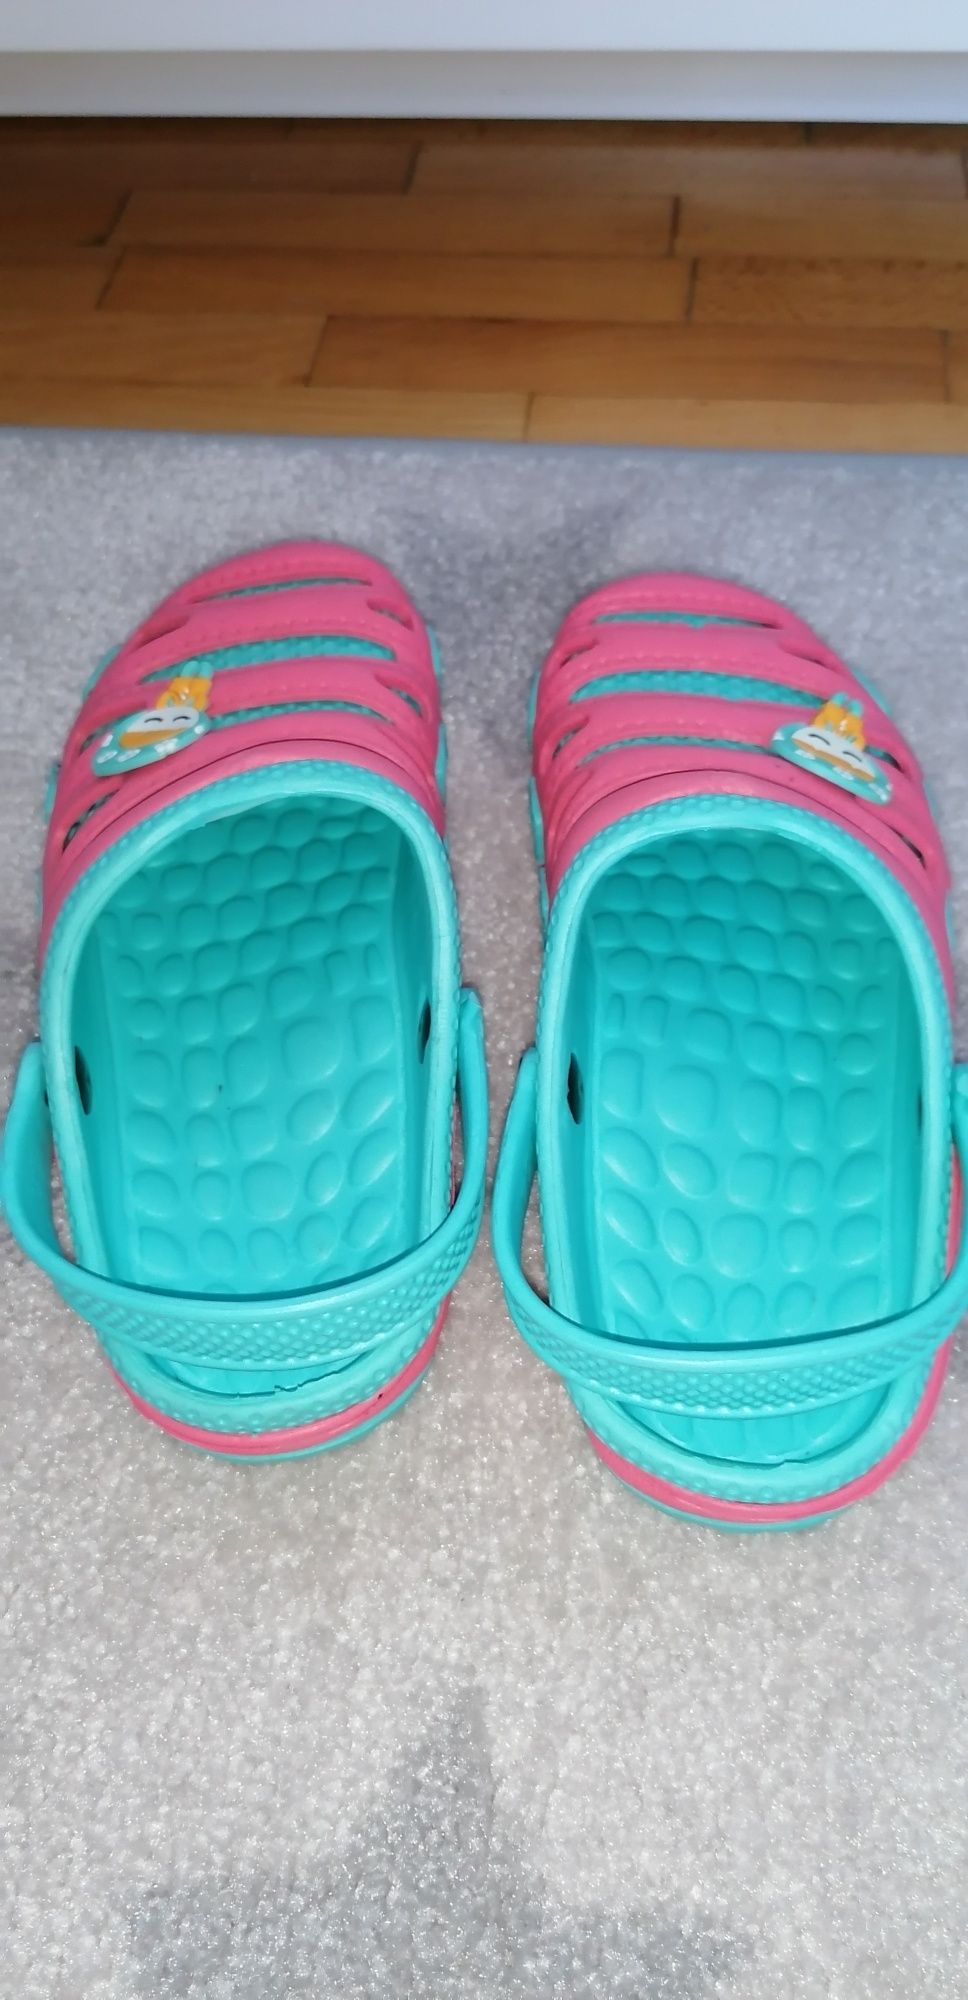 Klapki nowe r. 34, klapeczki, 20,5 cm, buty na lato